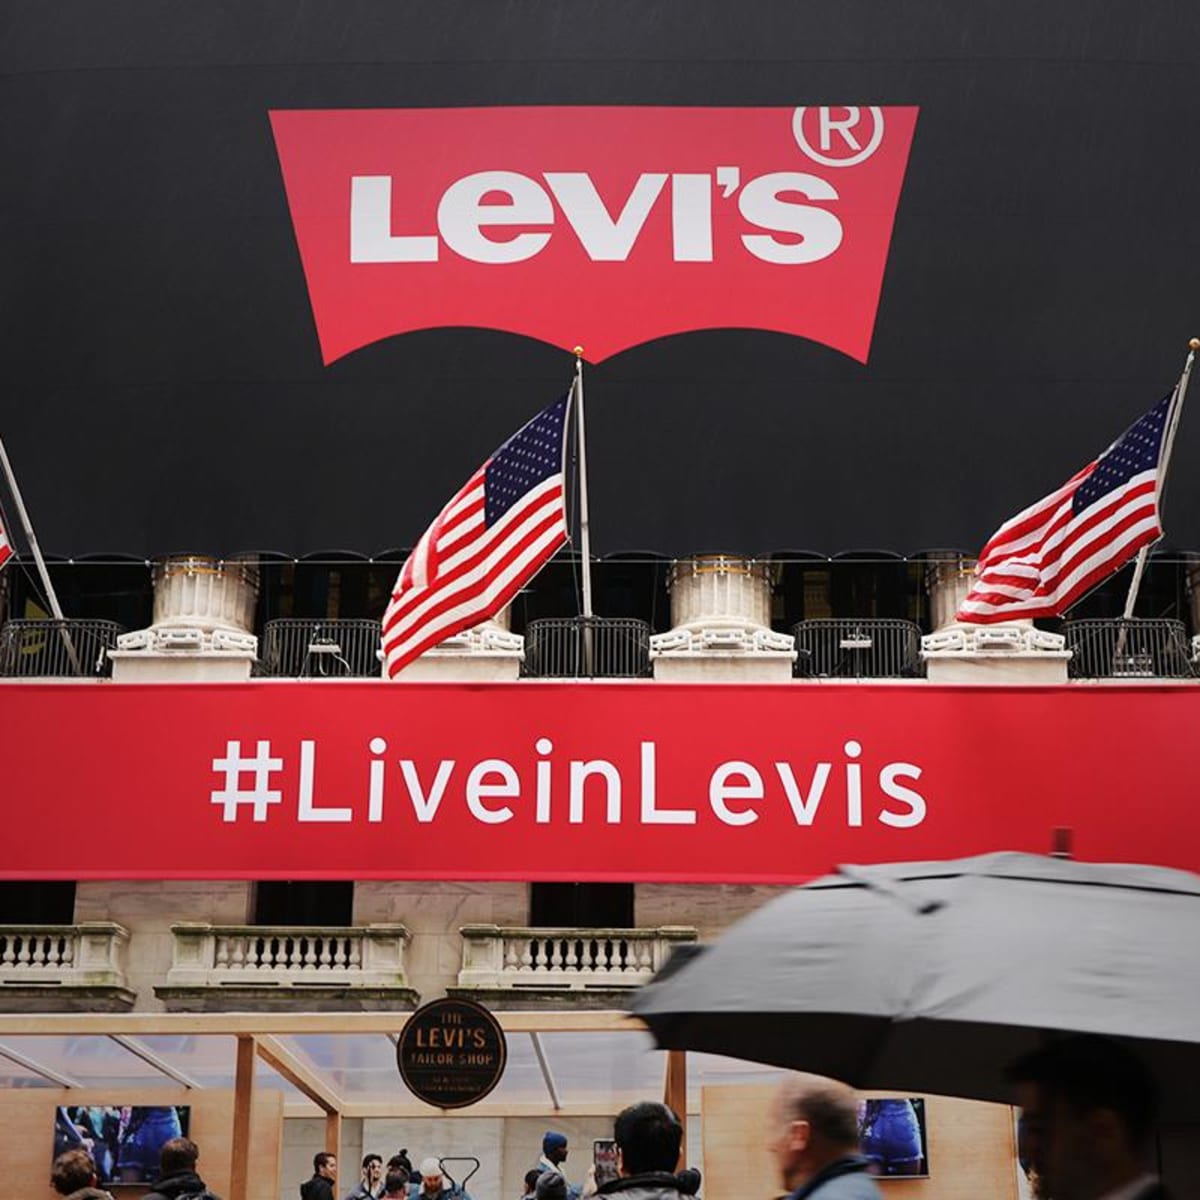 levis earnings report